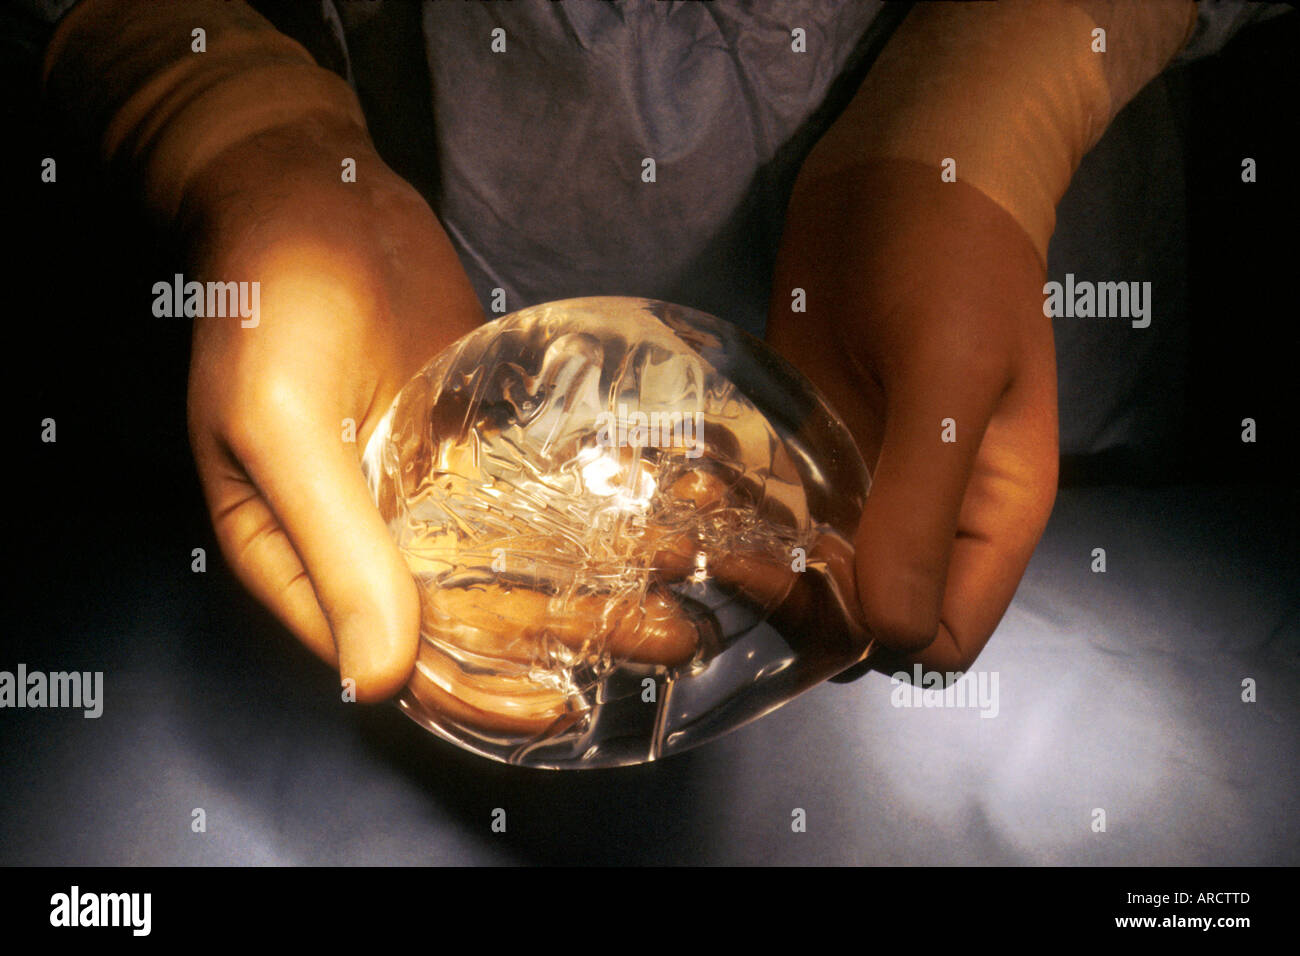 Une photographie d'un chirurgien titulaire d'un implant mammaire rempli de gel de silicone, utilisé pendant la chirurgie plastique ou esthétique d'augmenter ou de re Banque D'Images